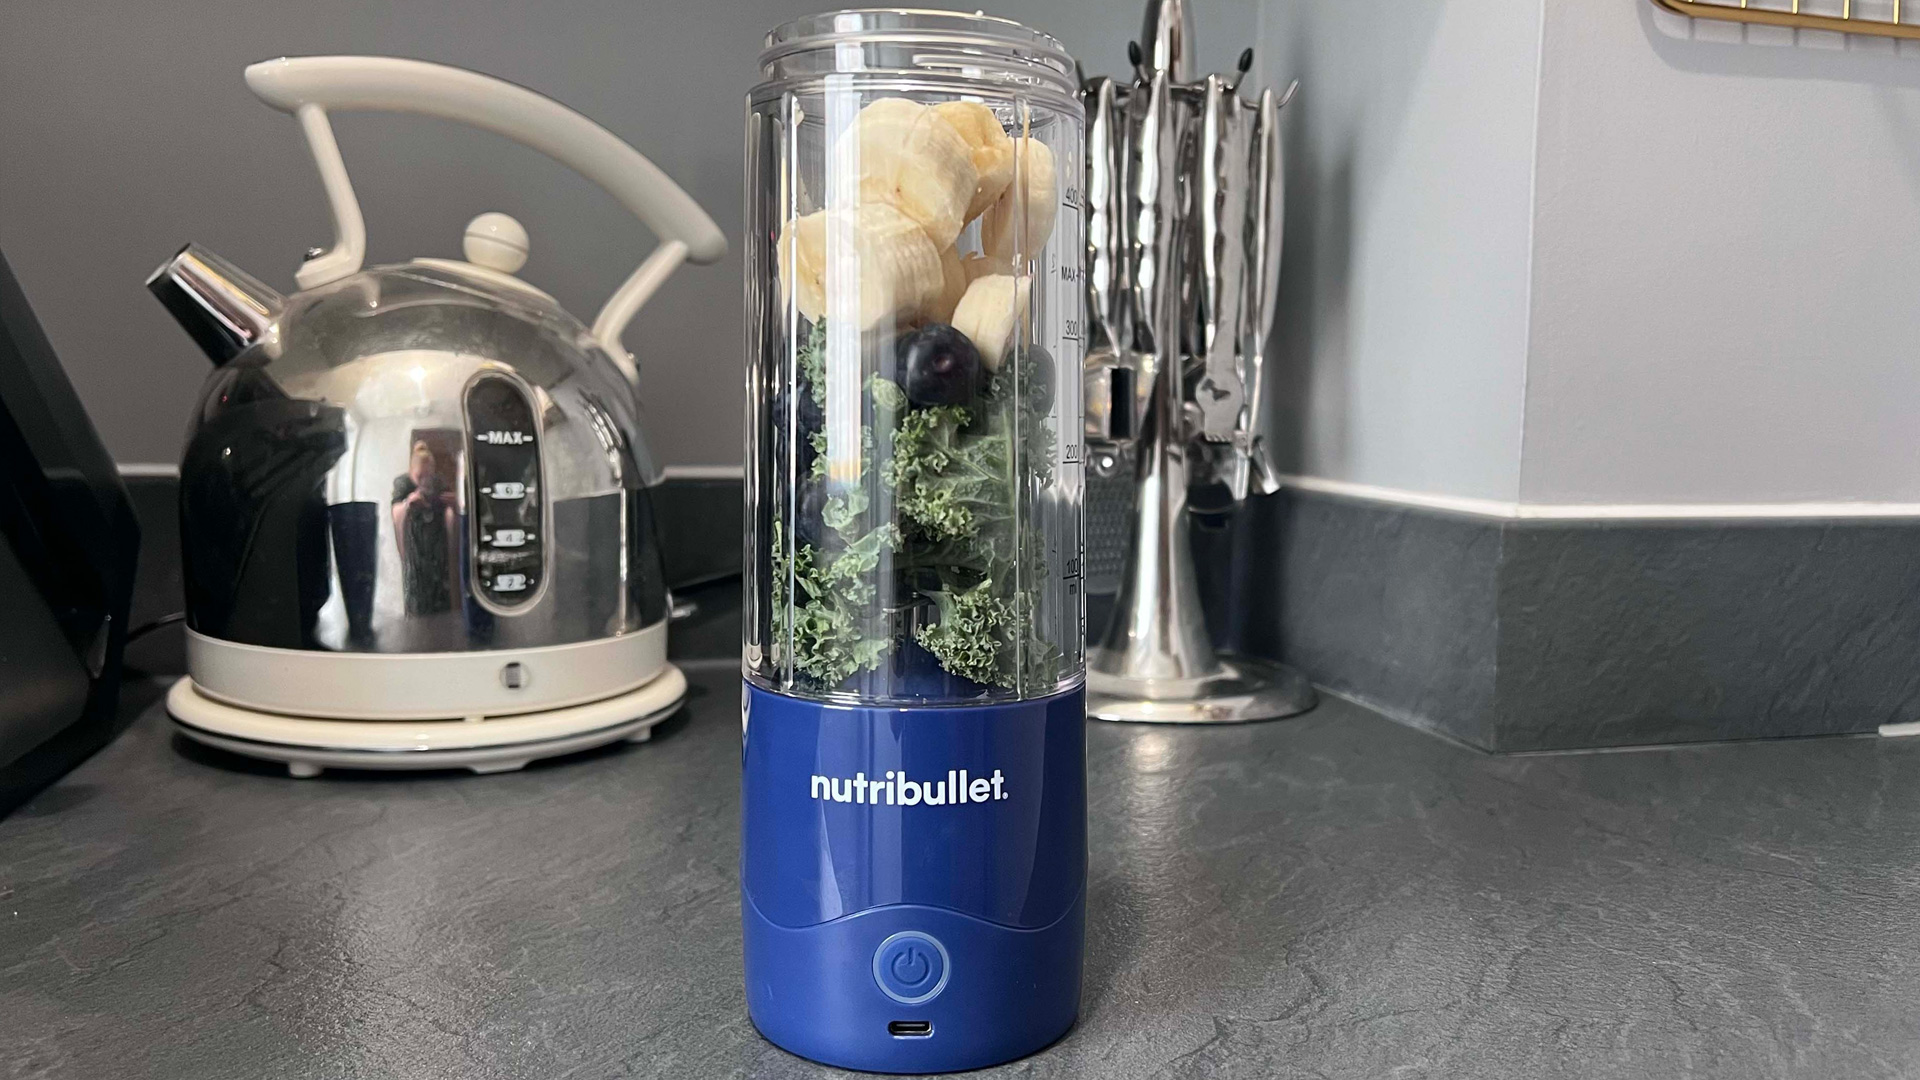 Banana, blueberries and kale in the Nutribullet Magic Bullet portable blender